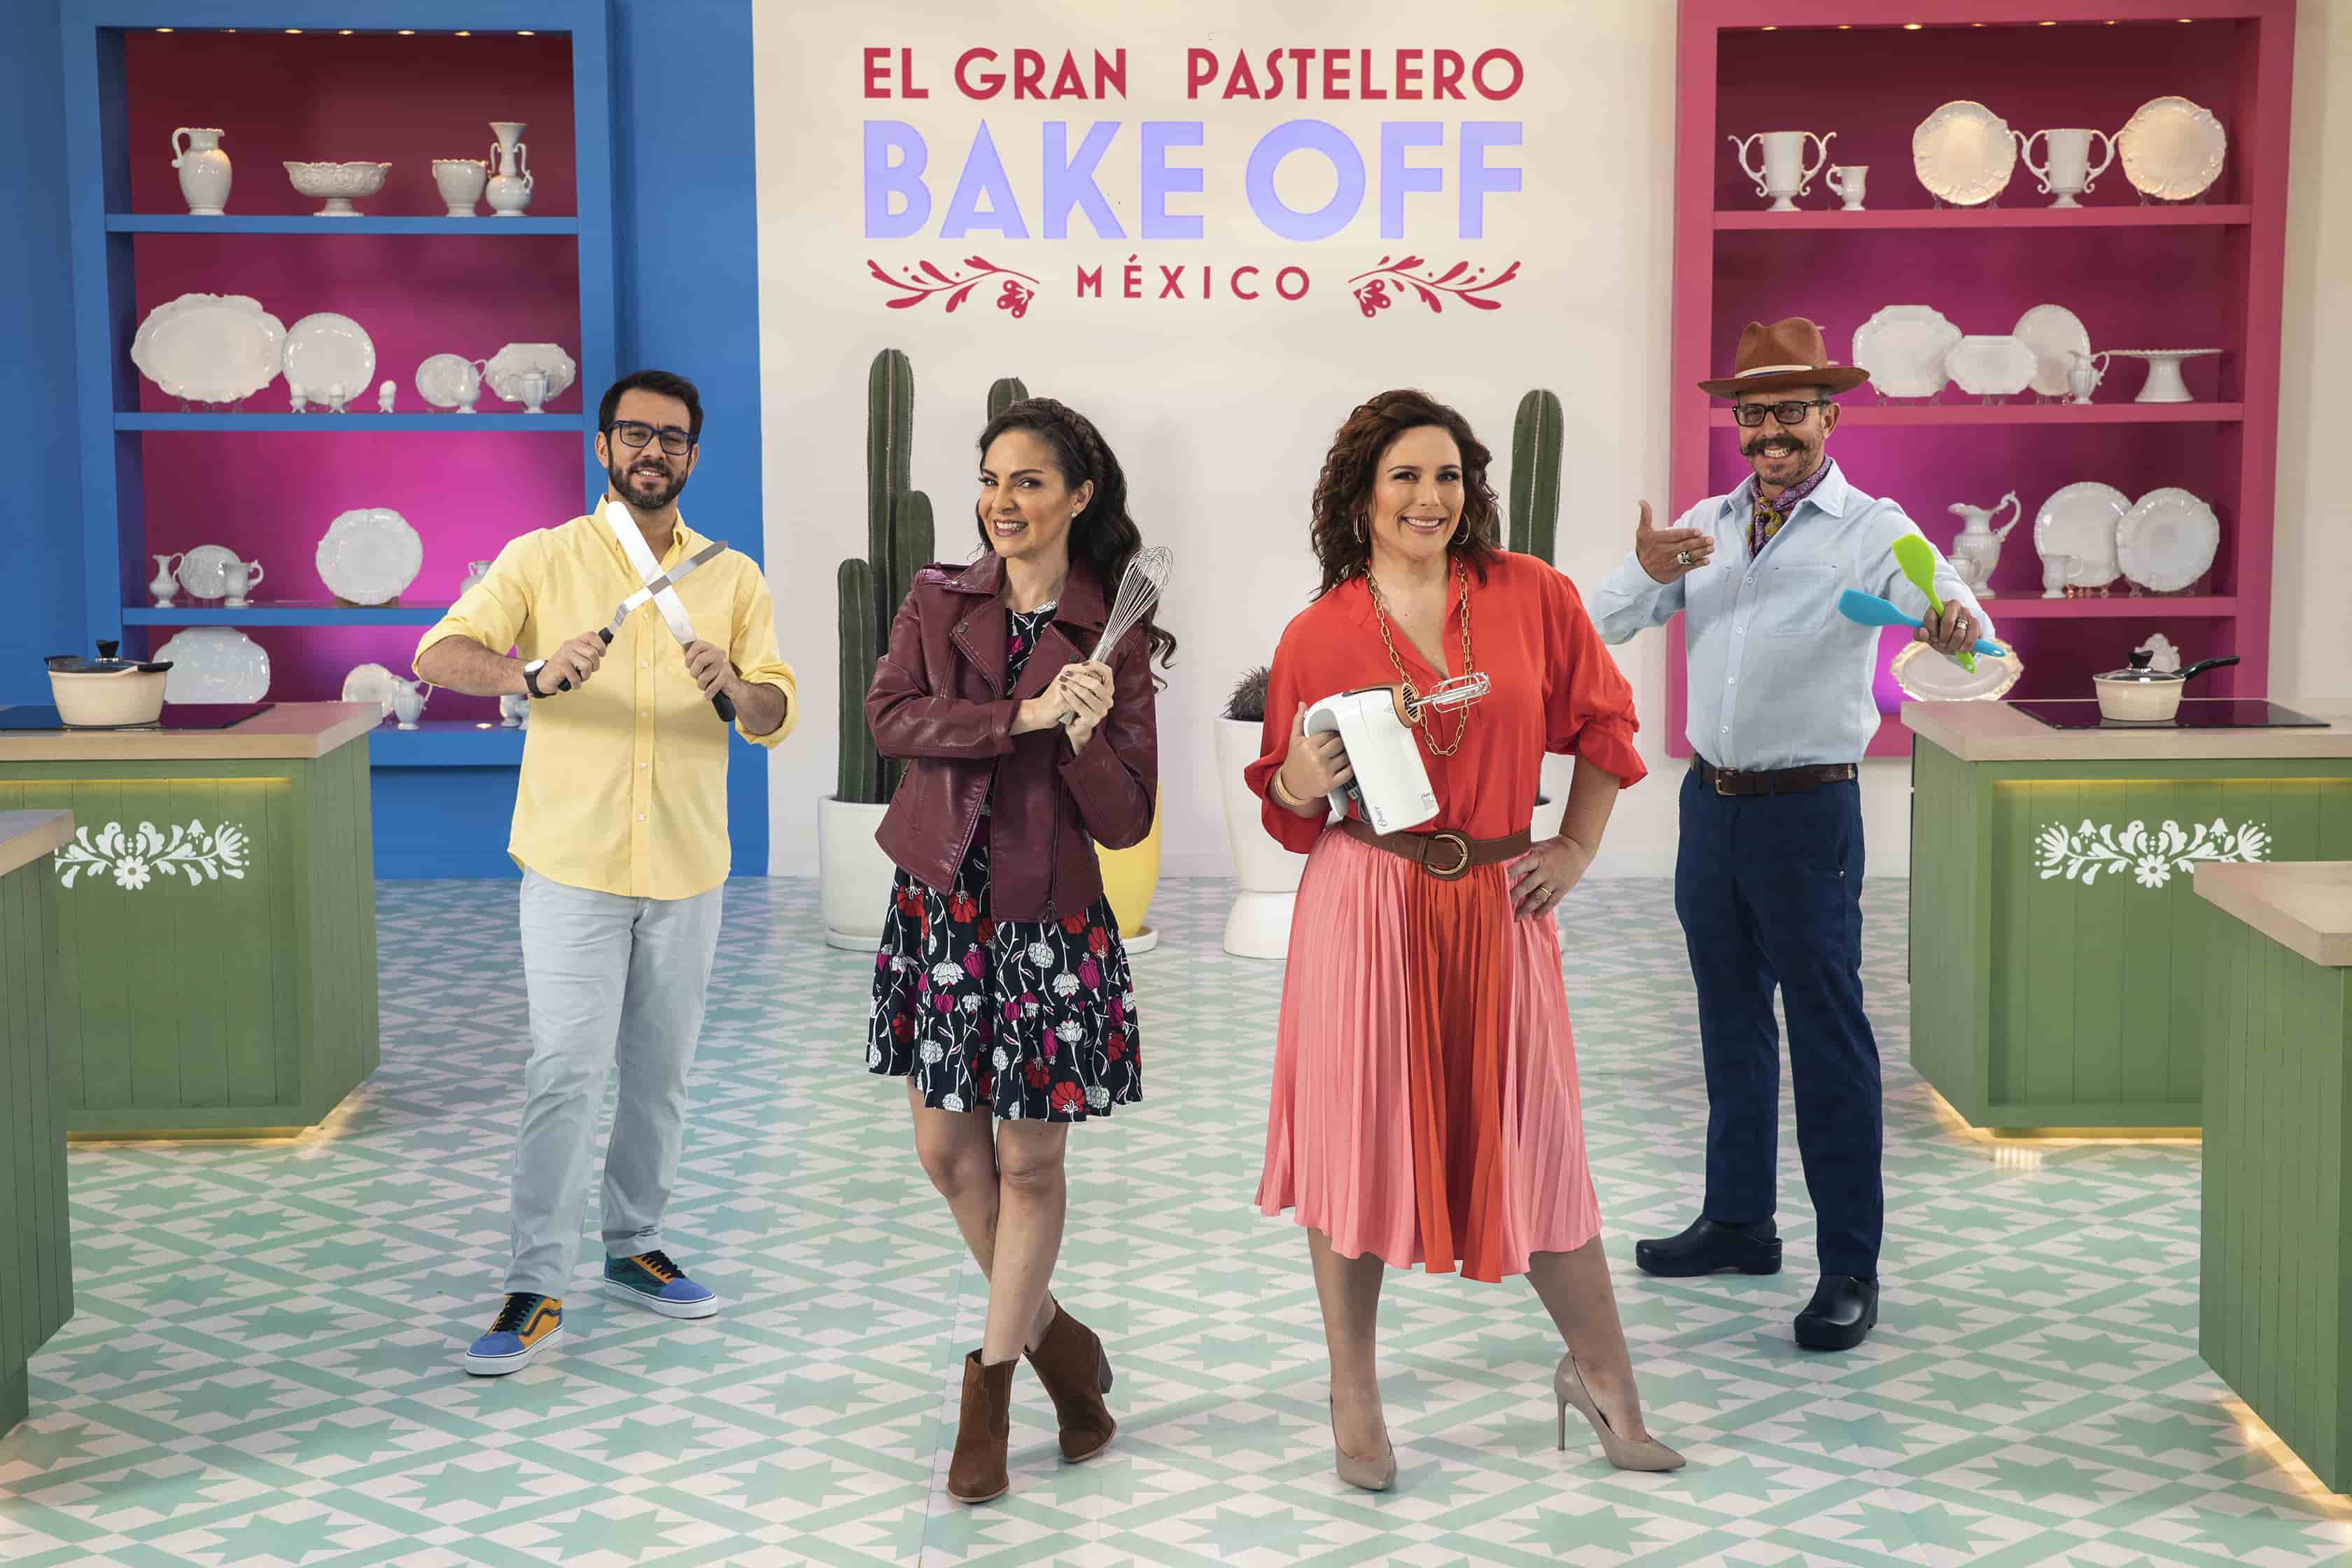 ¡Los célebres participantes en "el gran pastelero - bake off México" Demostrarán que además tienen un talento oculto para la cocina!